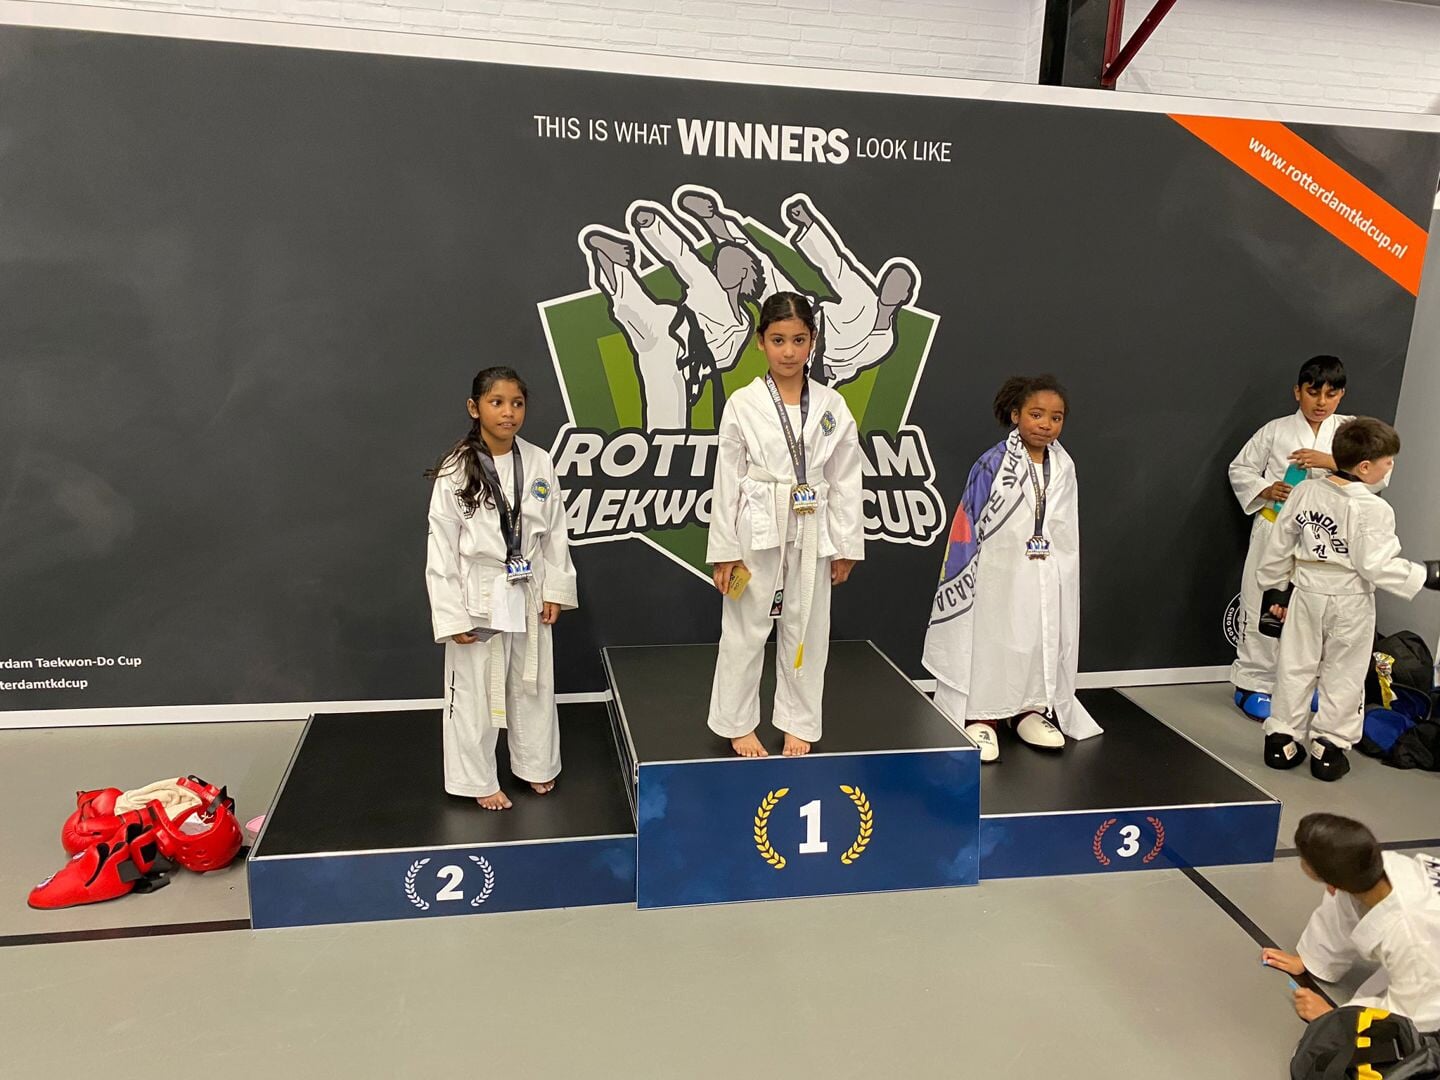 Wederom wisten diverse (jonge) leden van Defence Center Boxtel zich in de prijzen te spelen. Dit keer tijdens de Rotterdam Taekwondo Cup.